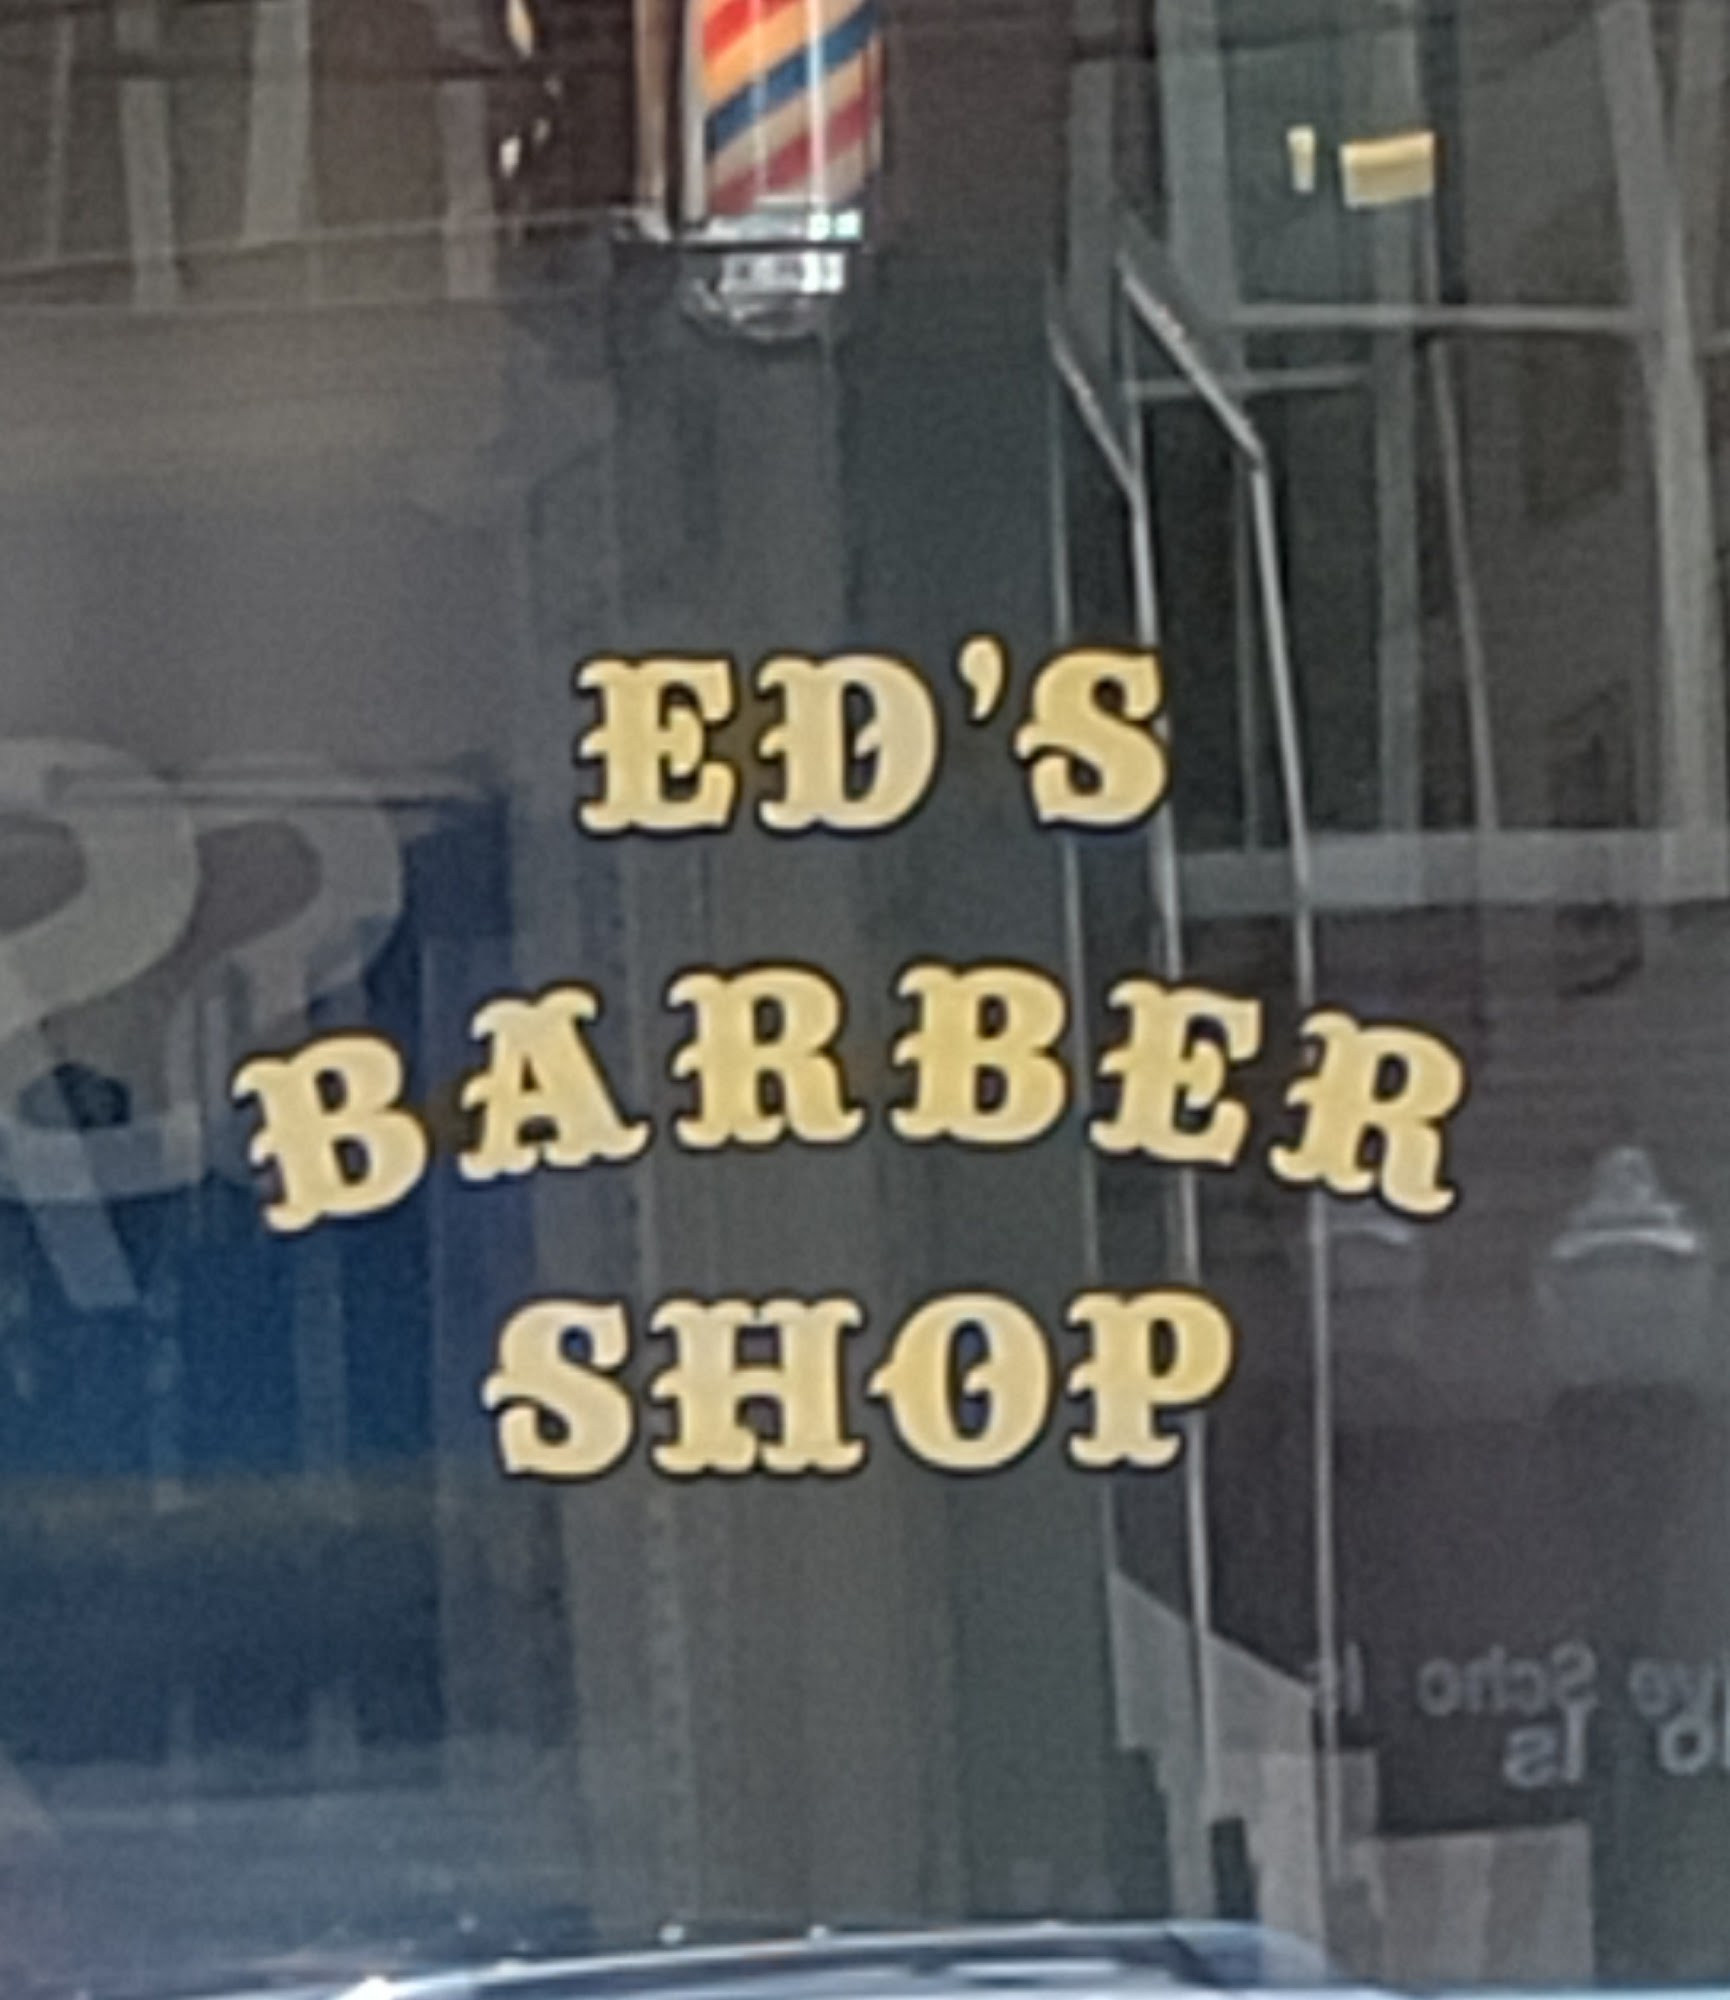 Ed's Barber Shop 74 Avenue A, Turners Falls Massachusetts 01376